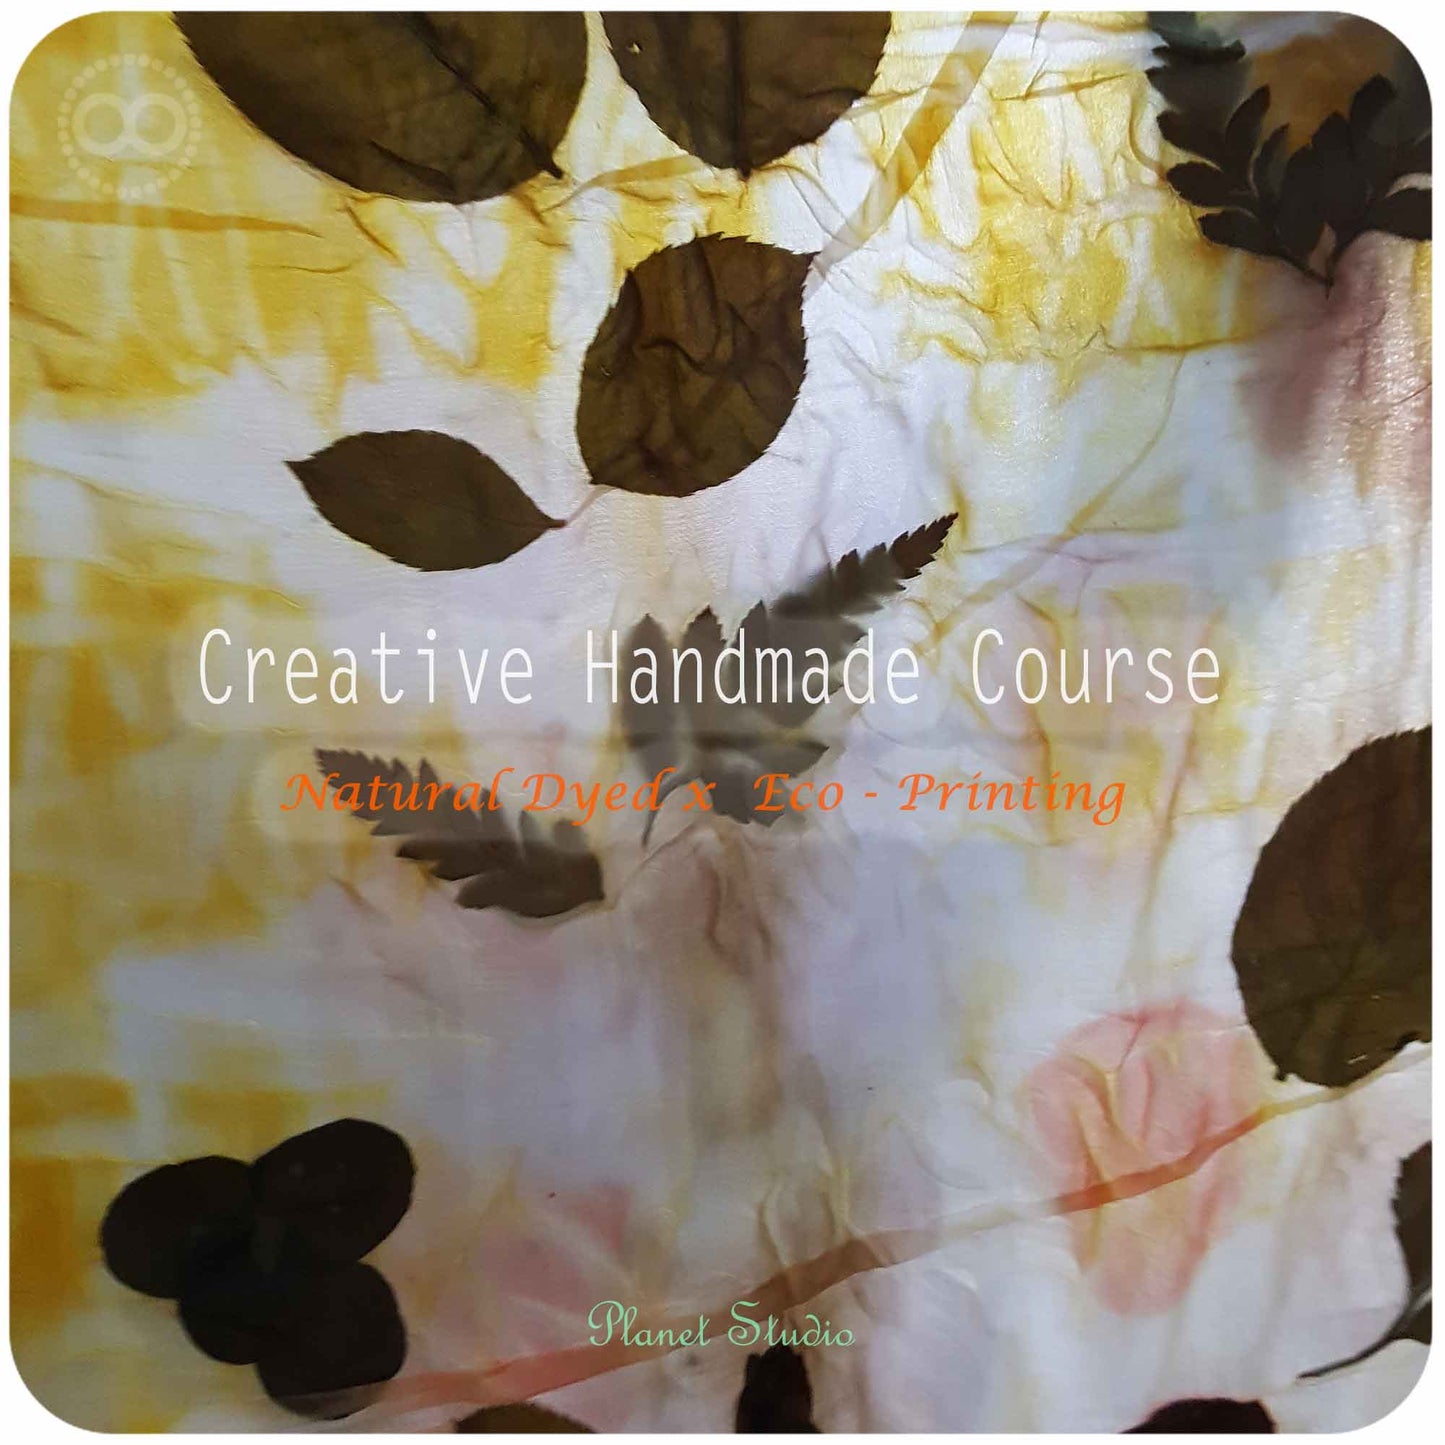 星球 ✹ 草木移印染 ∞ 雙堂預約課程 Creative Handmade Course ∞ Natural Dyed Eco-Printing